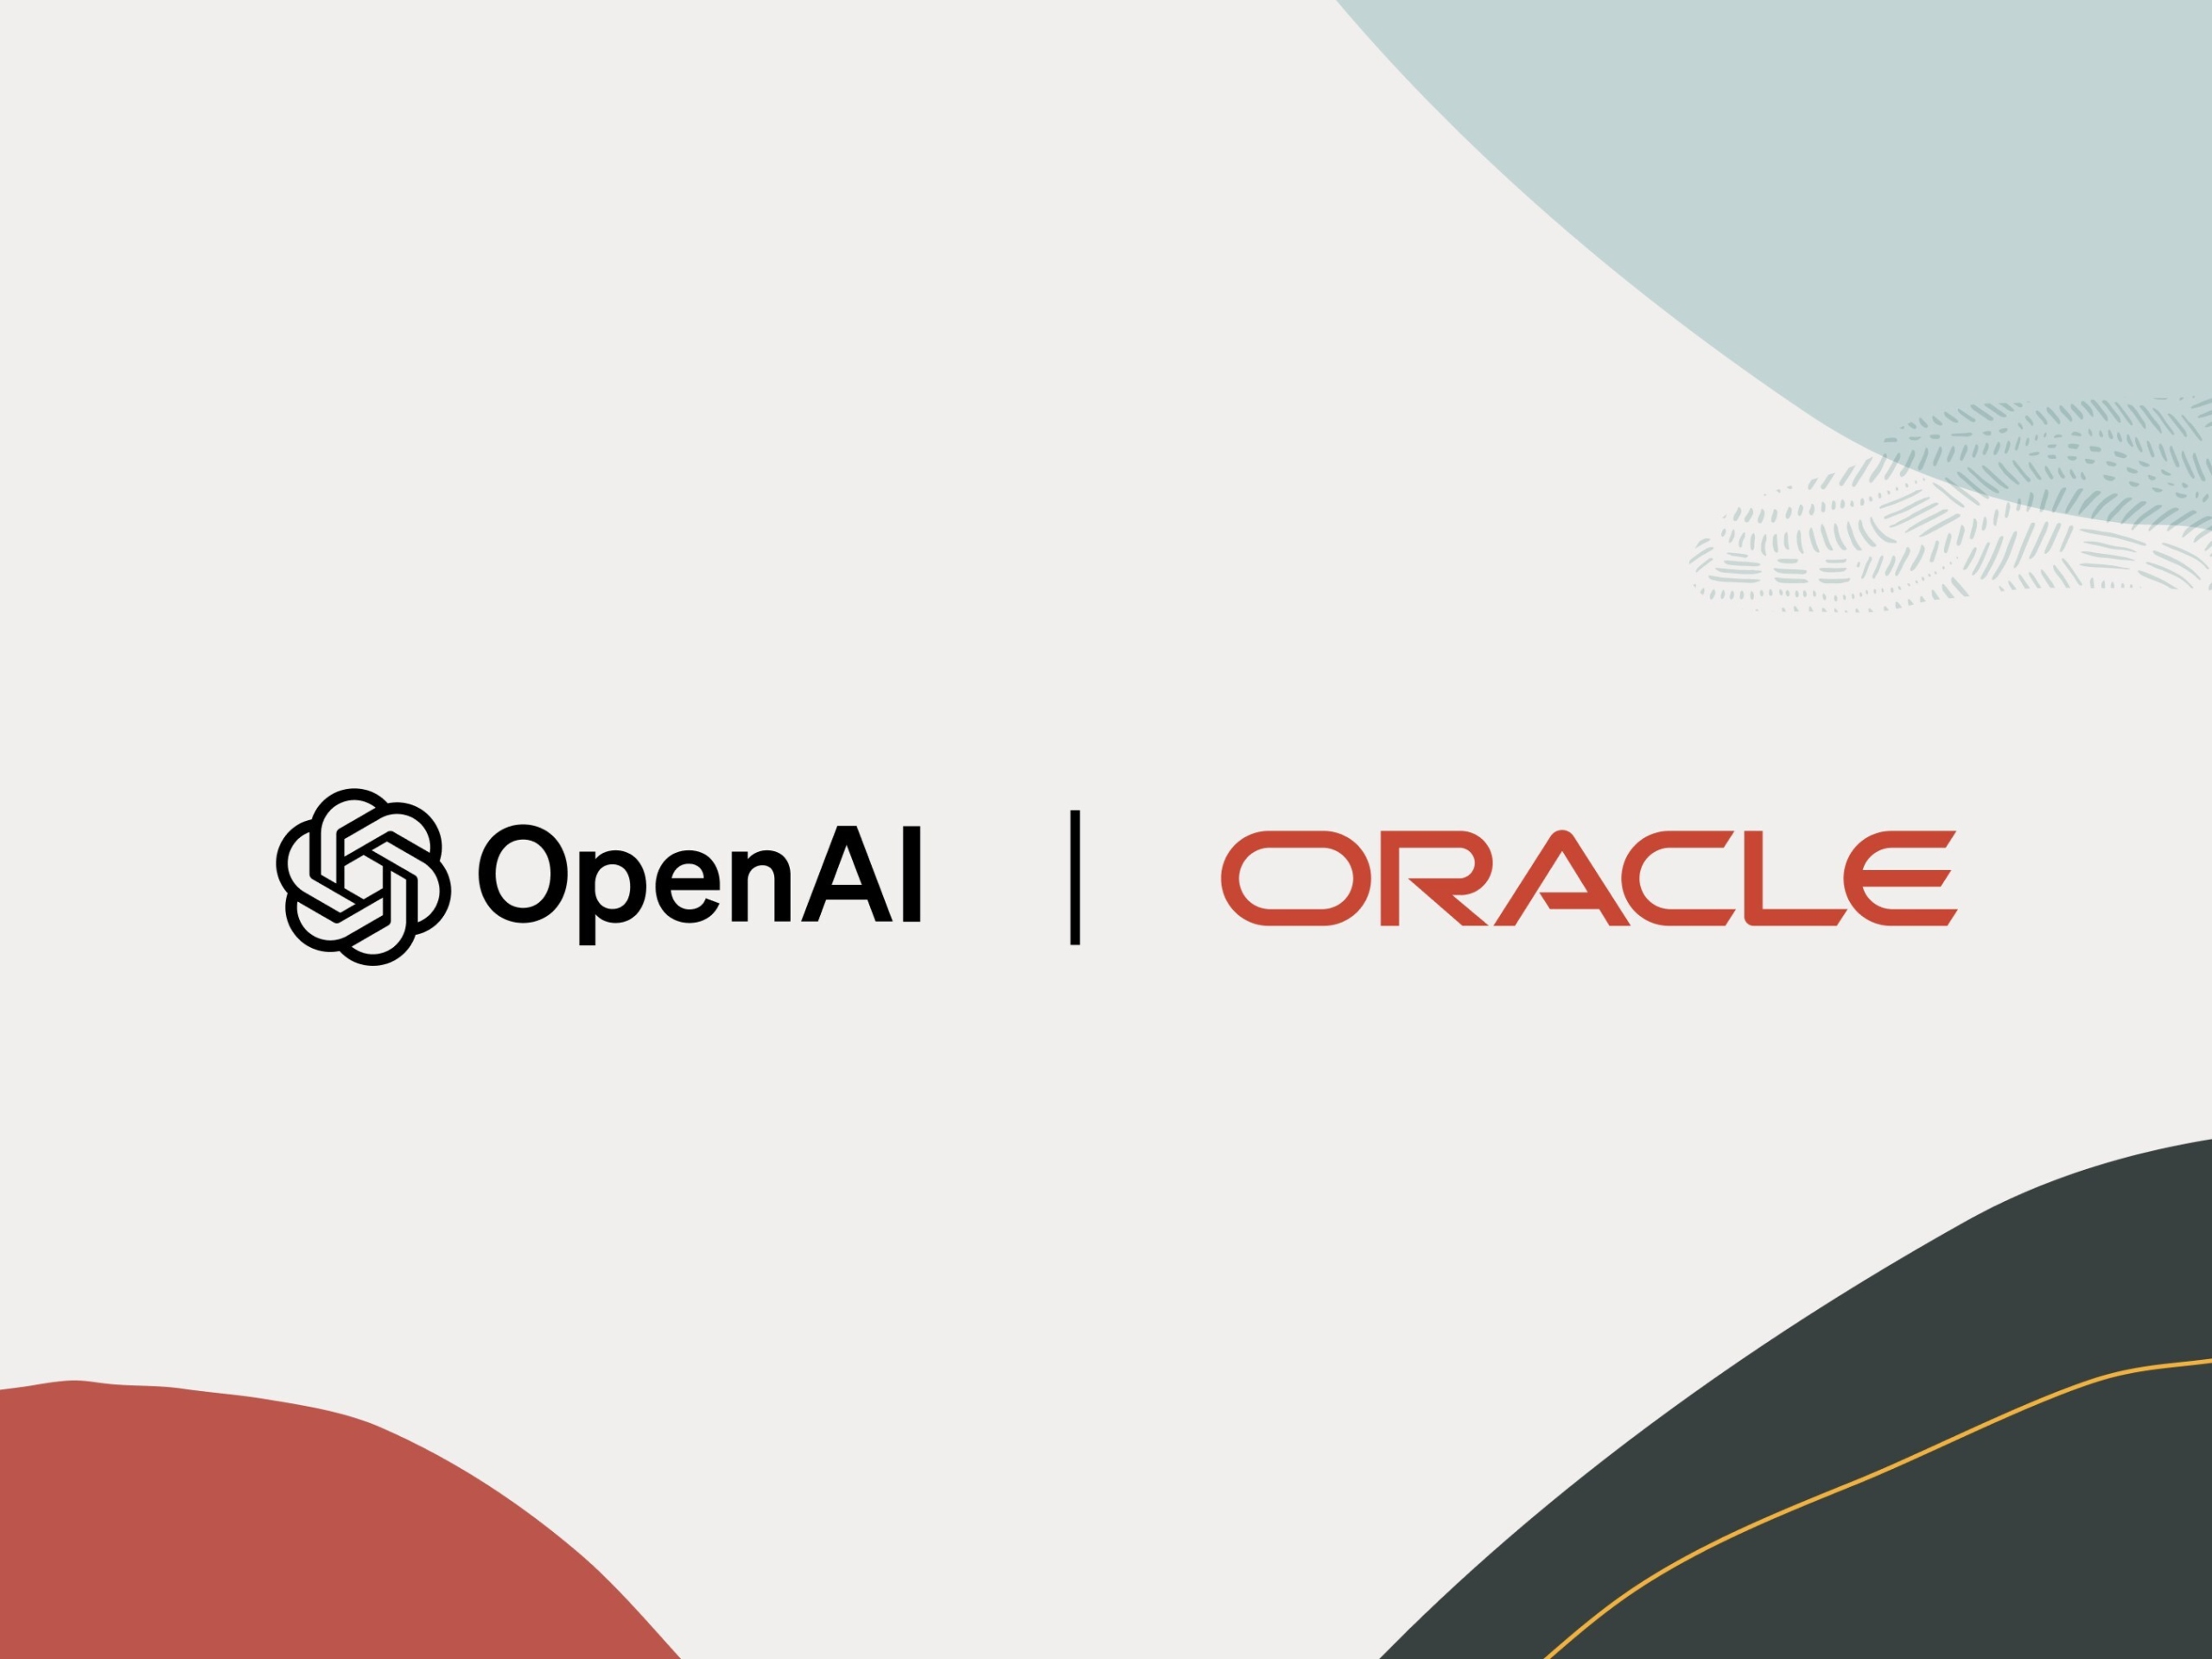 OpenAI holt sich zusätzliche KI-Kapazitäten in der Oracle-Cloud